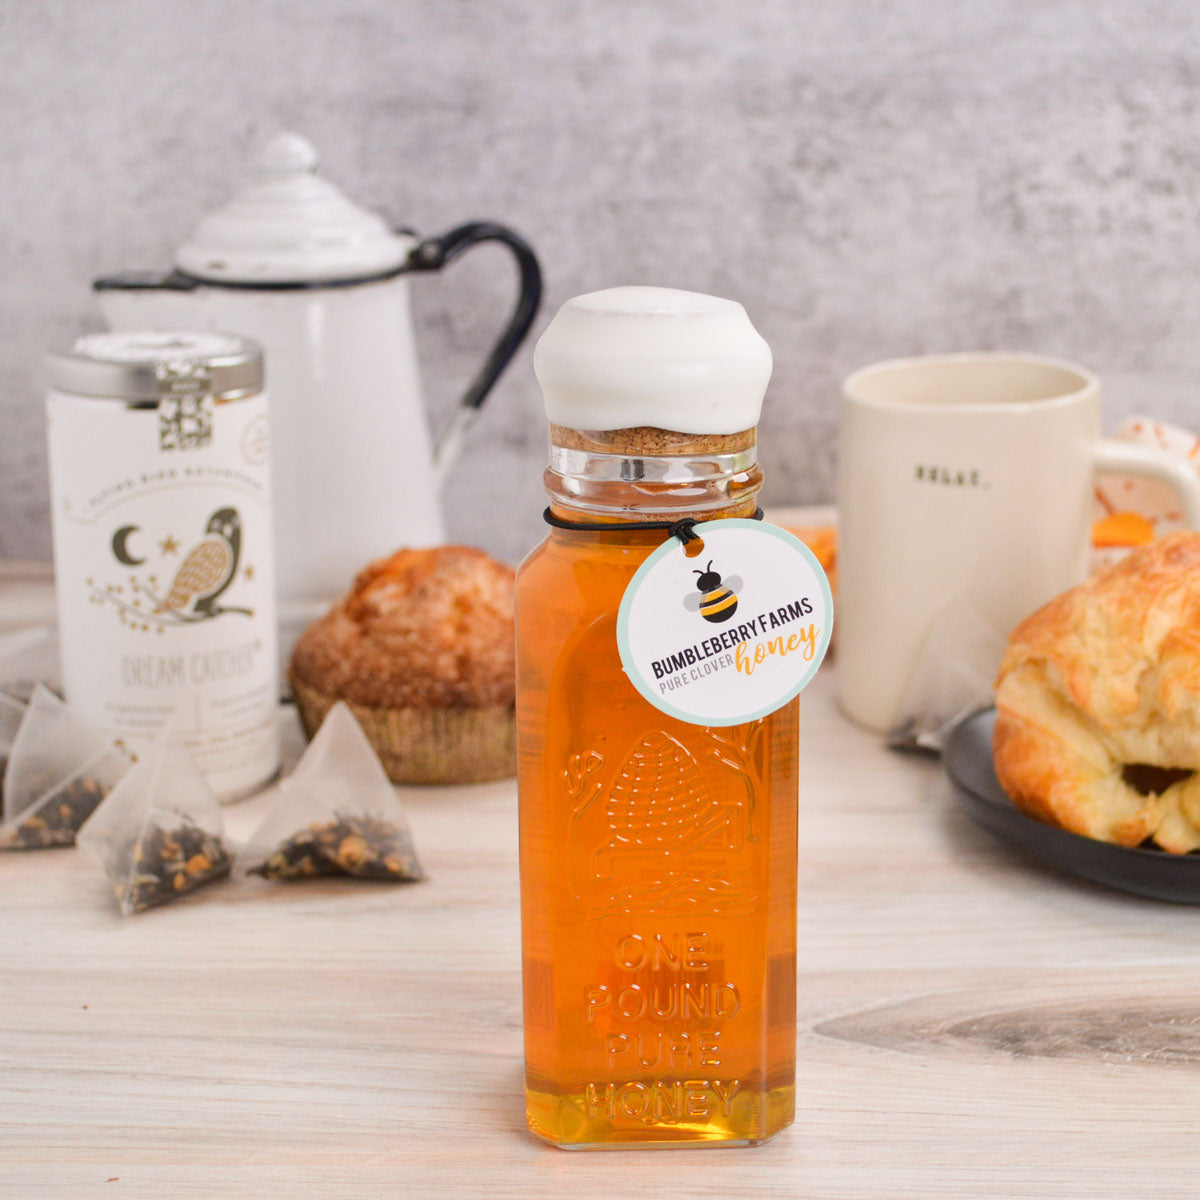 Tea + Honey Set - Pure Clover Honey and Dream Catcher Tea